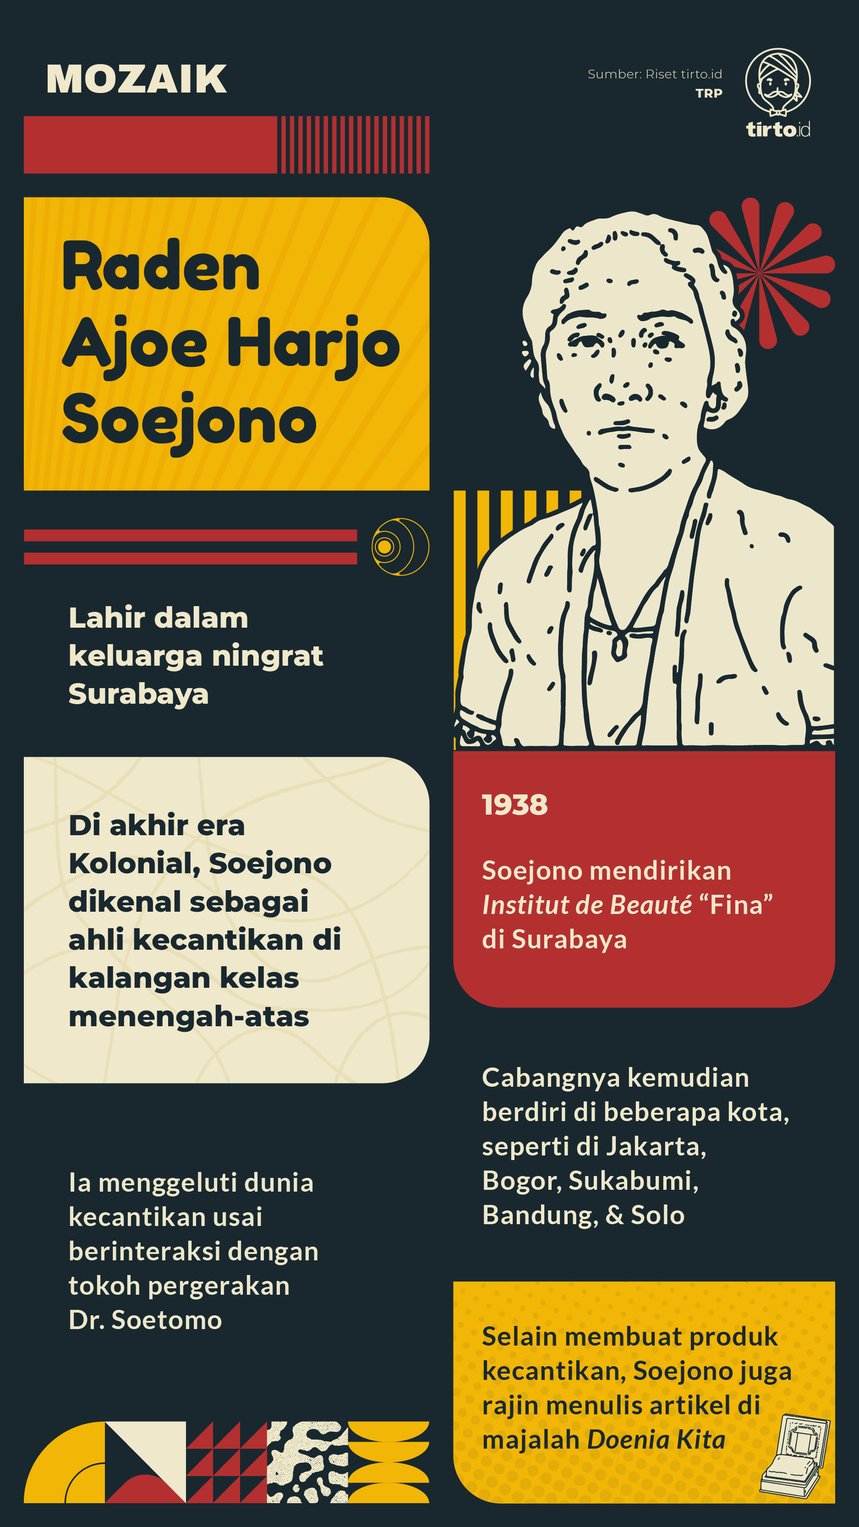 Infografik Mozaik Raden Ajoe Harjo Soejono